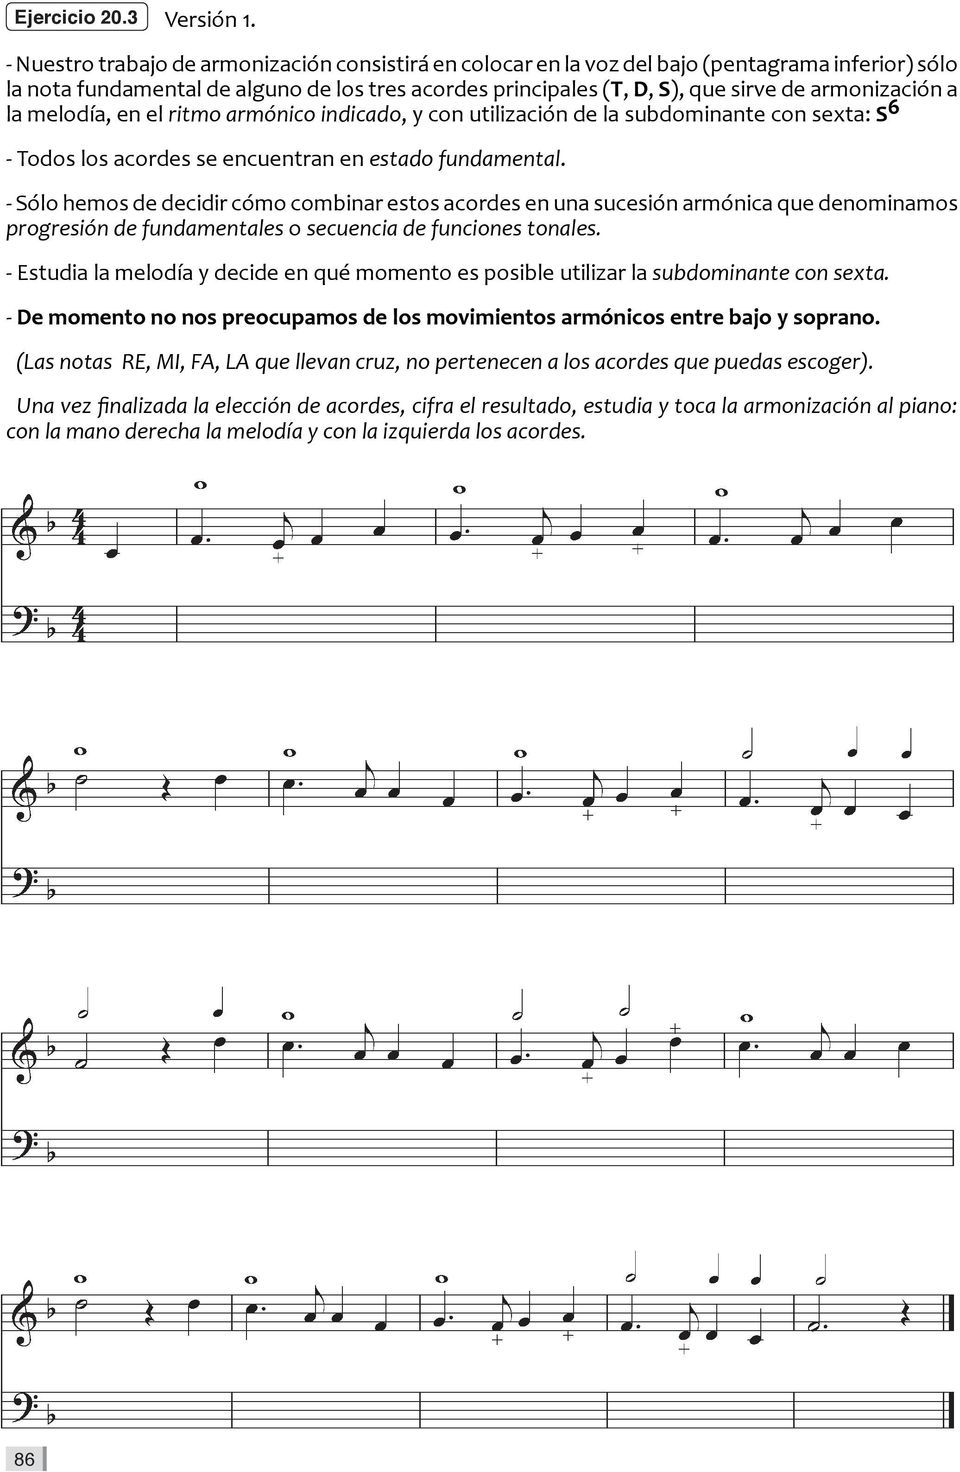 armonización a la melodía, en el ritmo armónico indicado, y con utilización de la subdominante con sexta: S 6 - Todos los acordes se encuentran en estado fundamental.